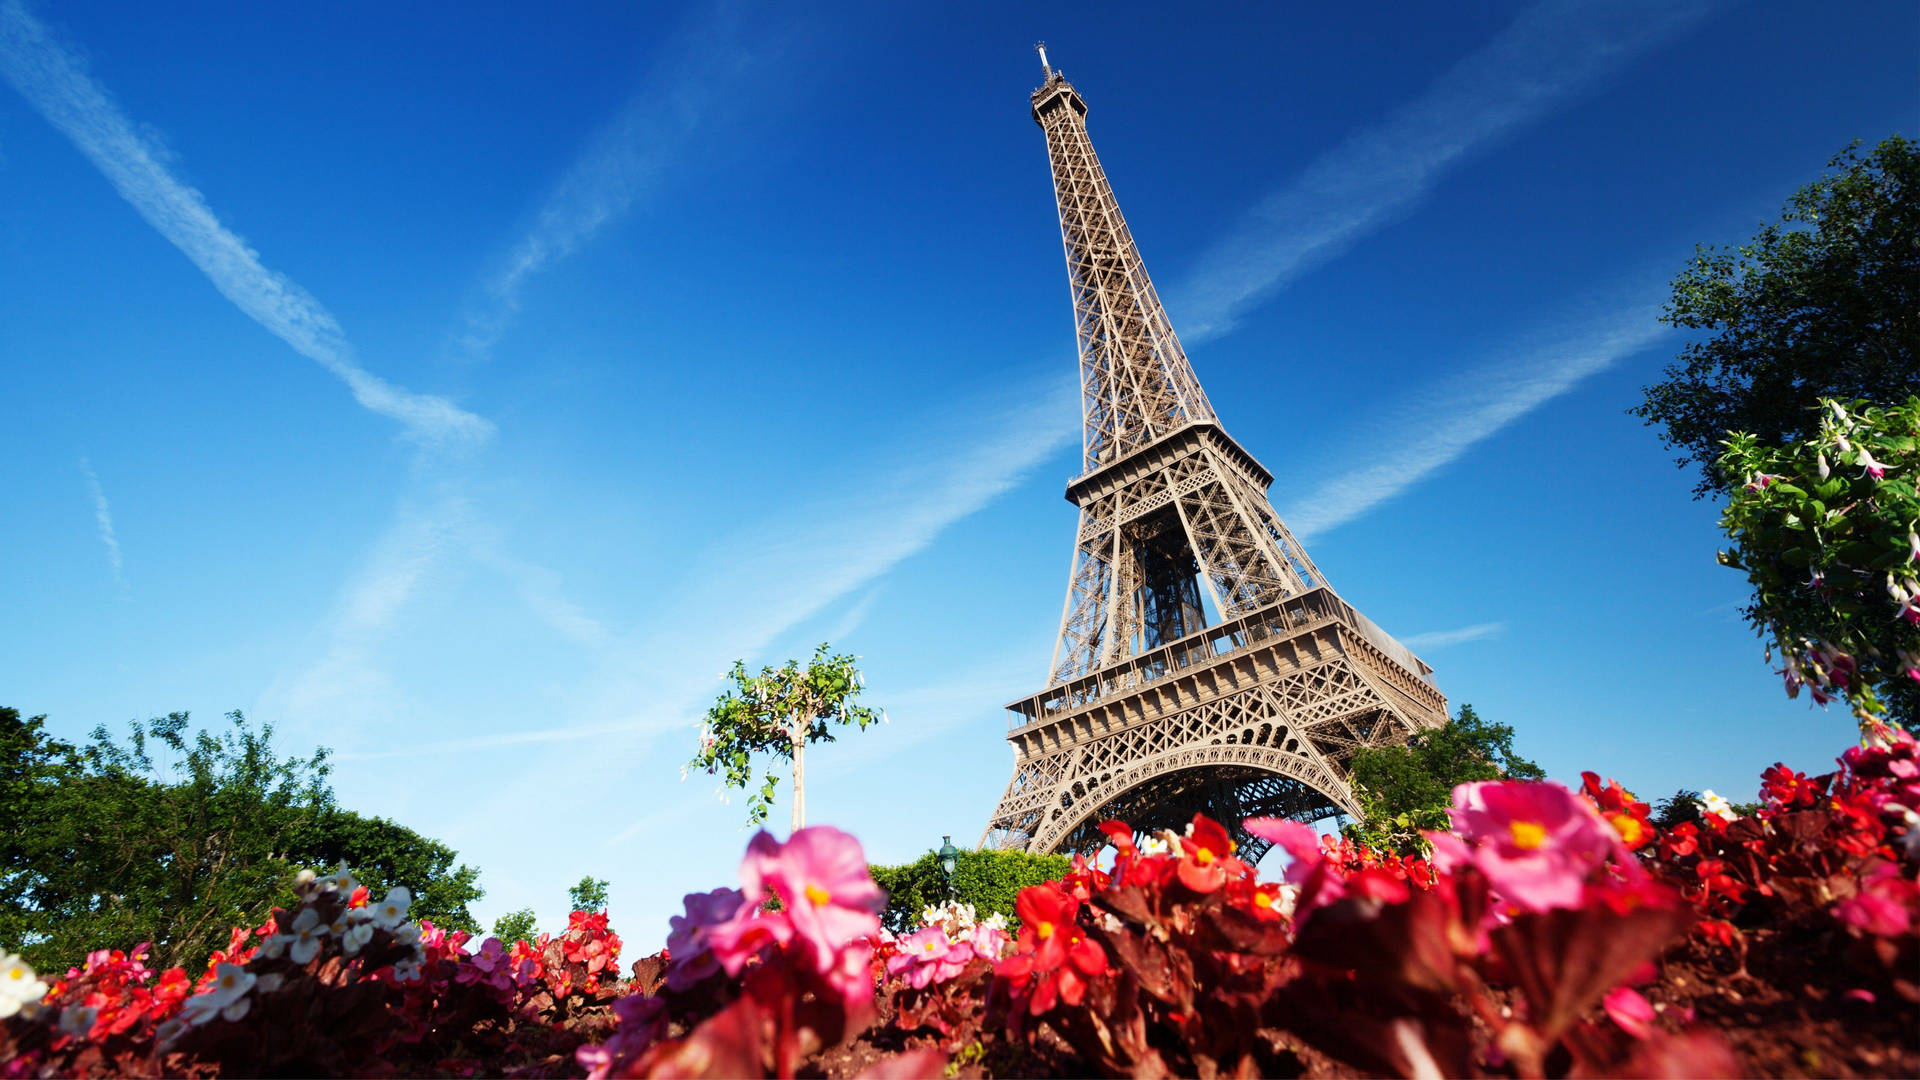 Blomstrandeblomma Vid Eiffeltornet I Paris. Wallpaper